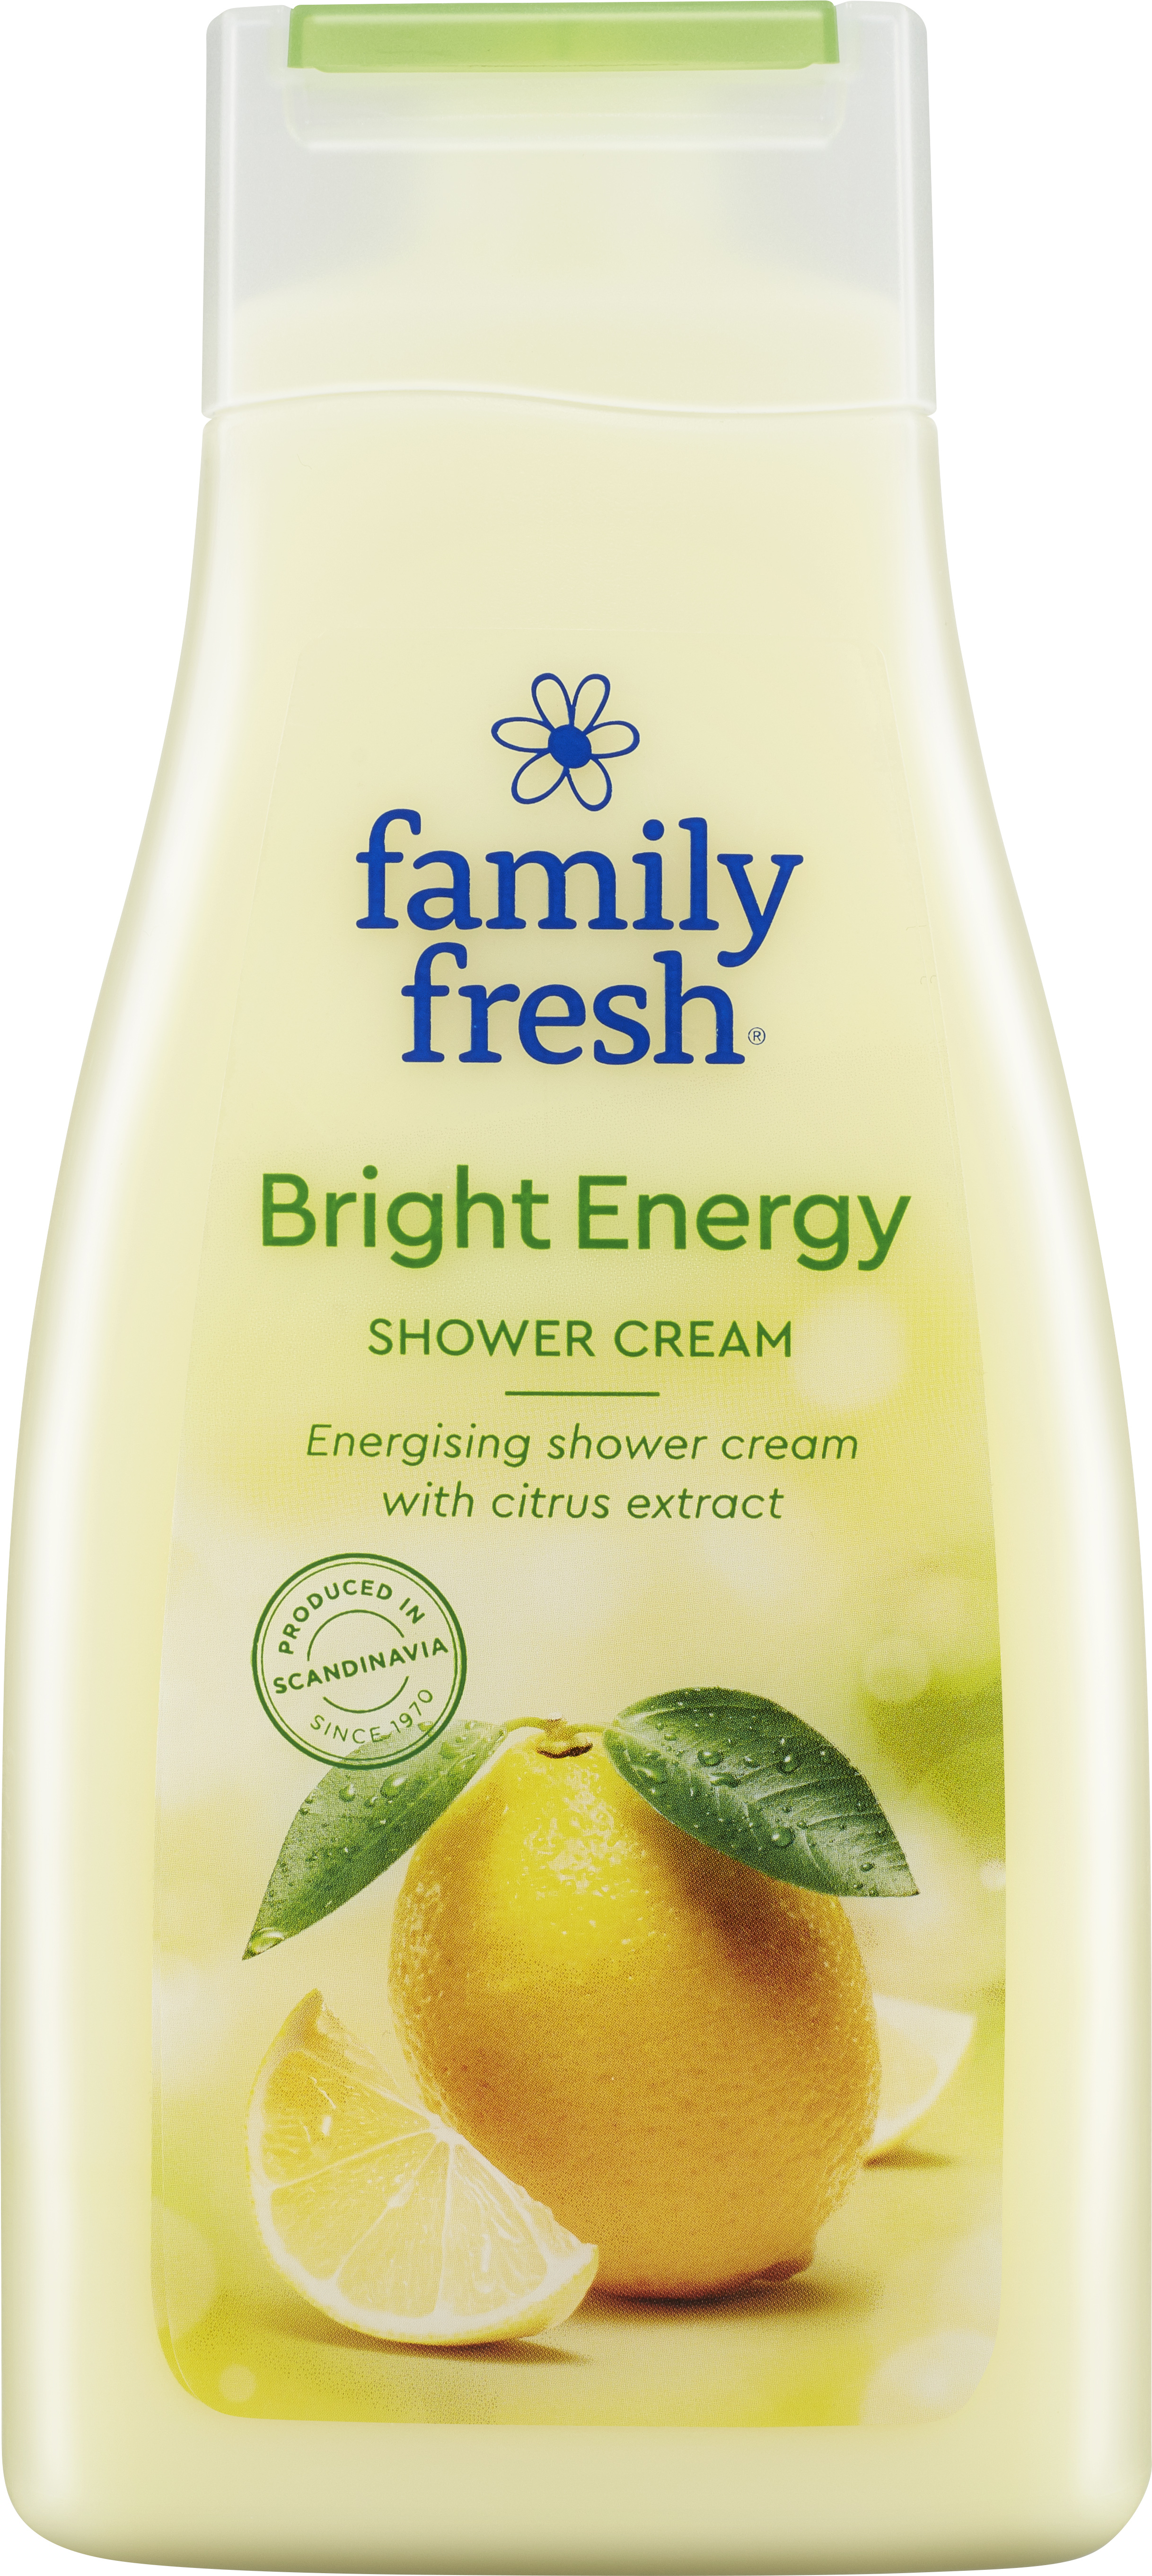 Family Fresh Bright Energy Shower Cream